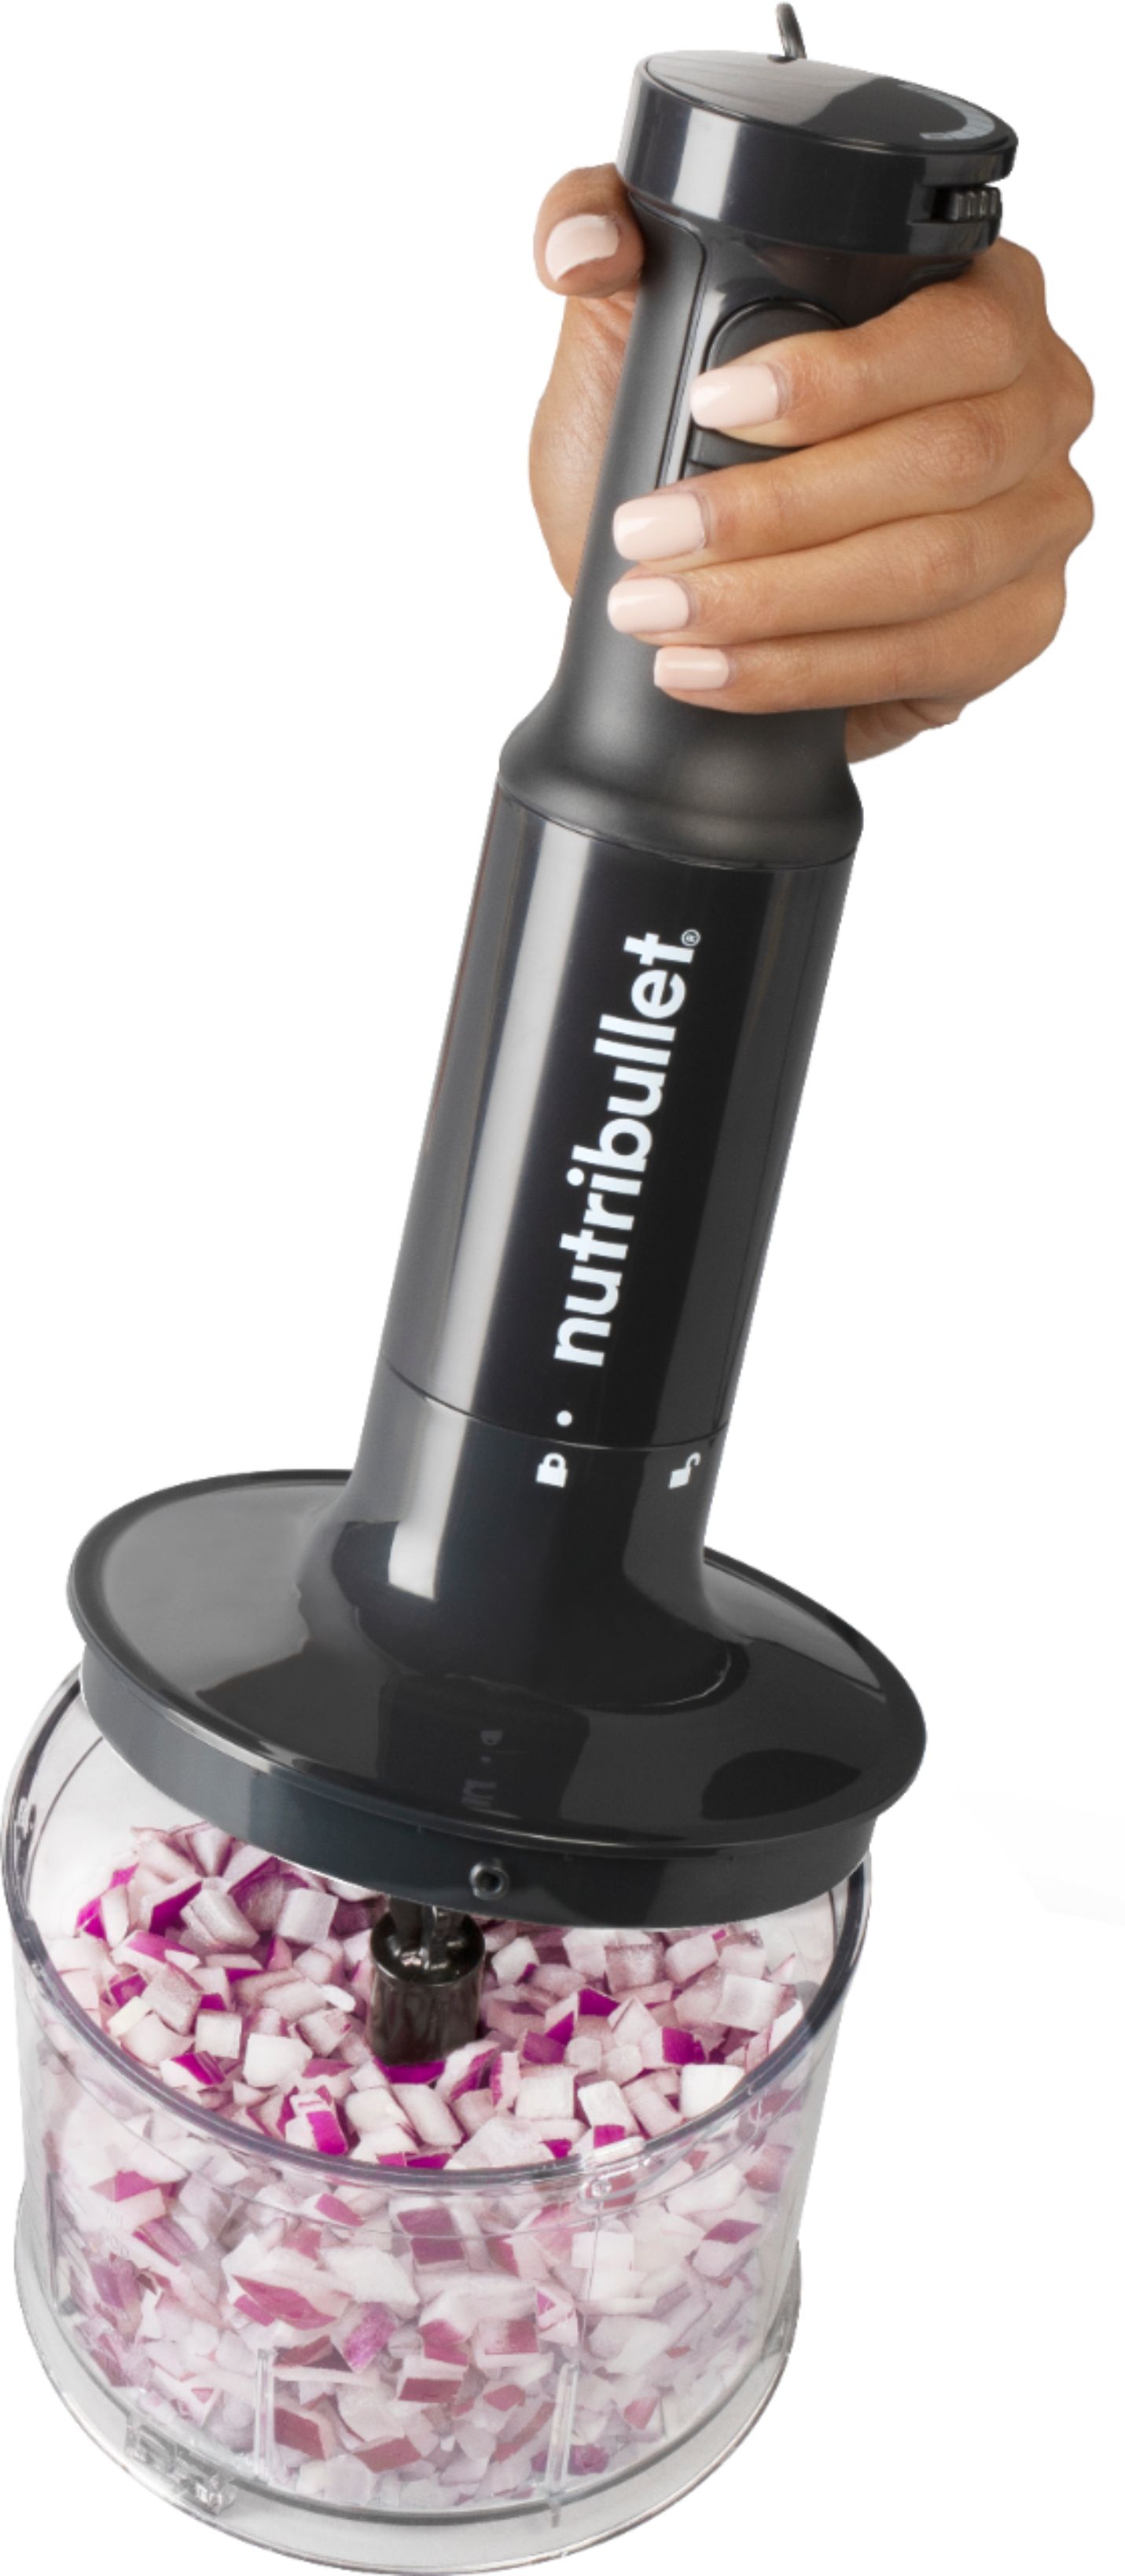 nutribullet Immersion Hand Blender Pro - Nutribullet